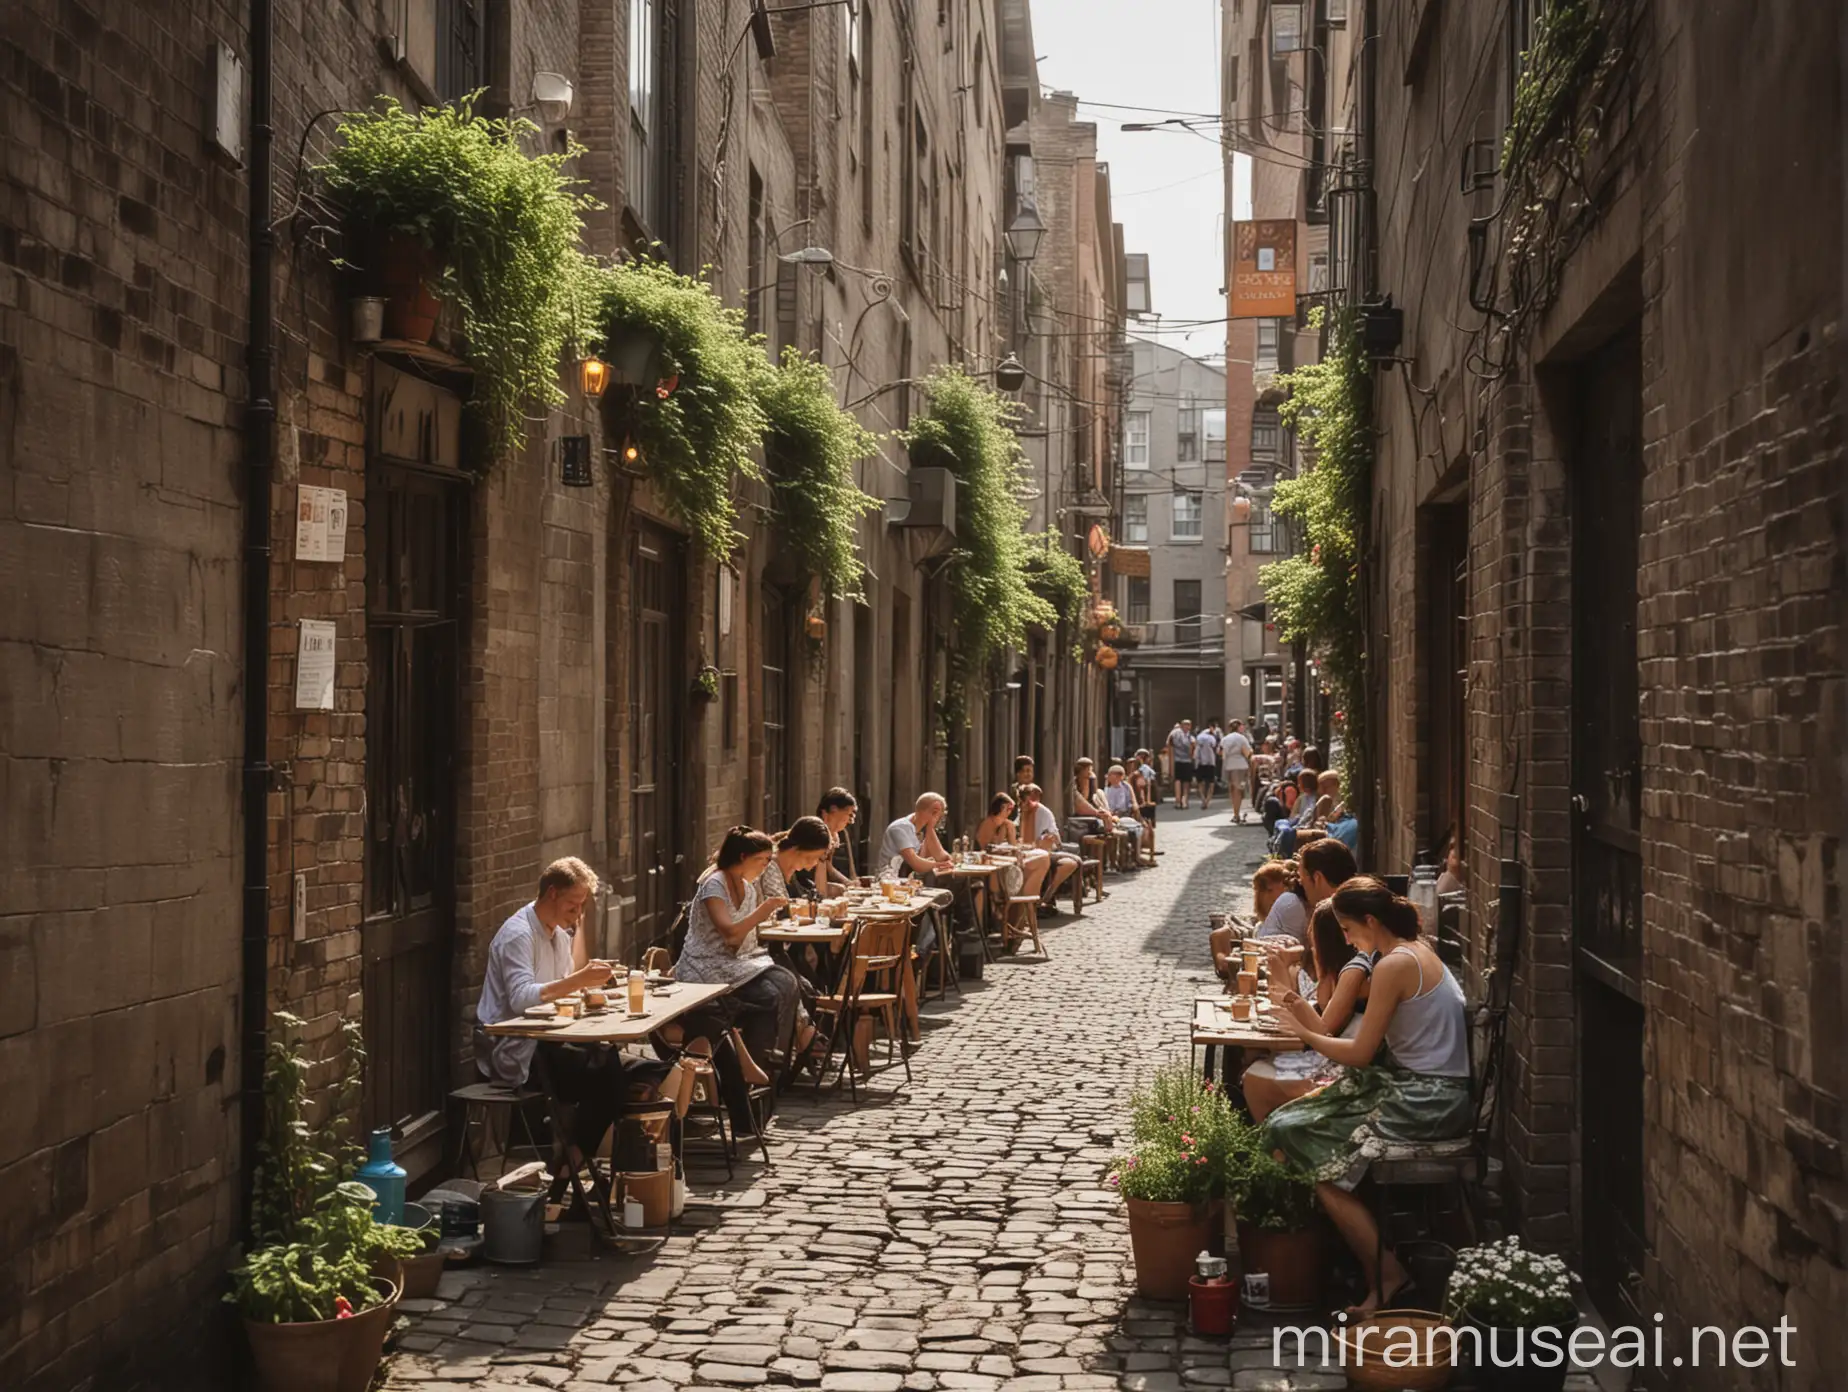 夏至到了，天气炎热，城市古老的小巷子里，人们摇着扇子，在户外喝茶聊天的情景。